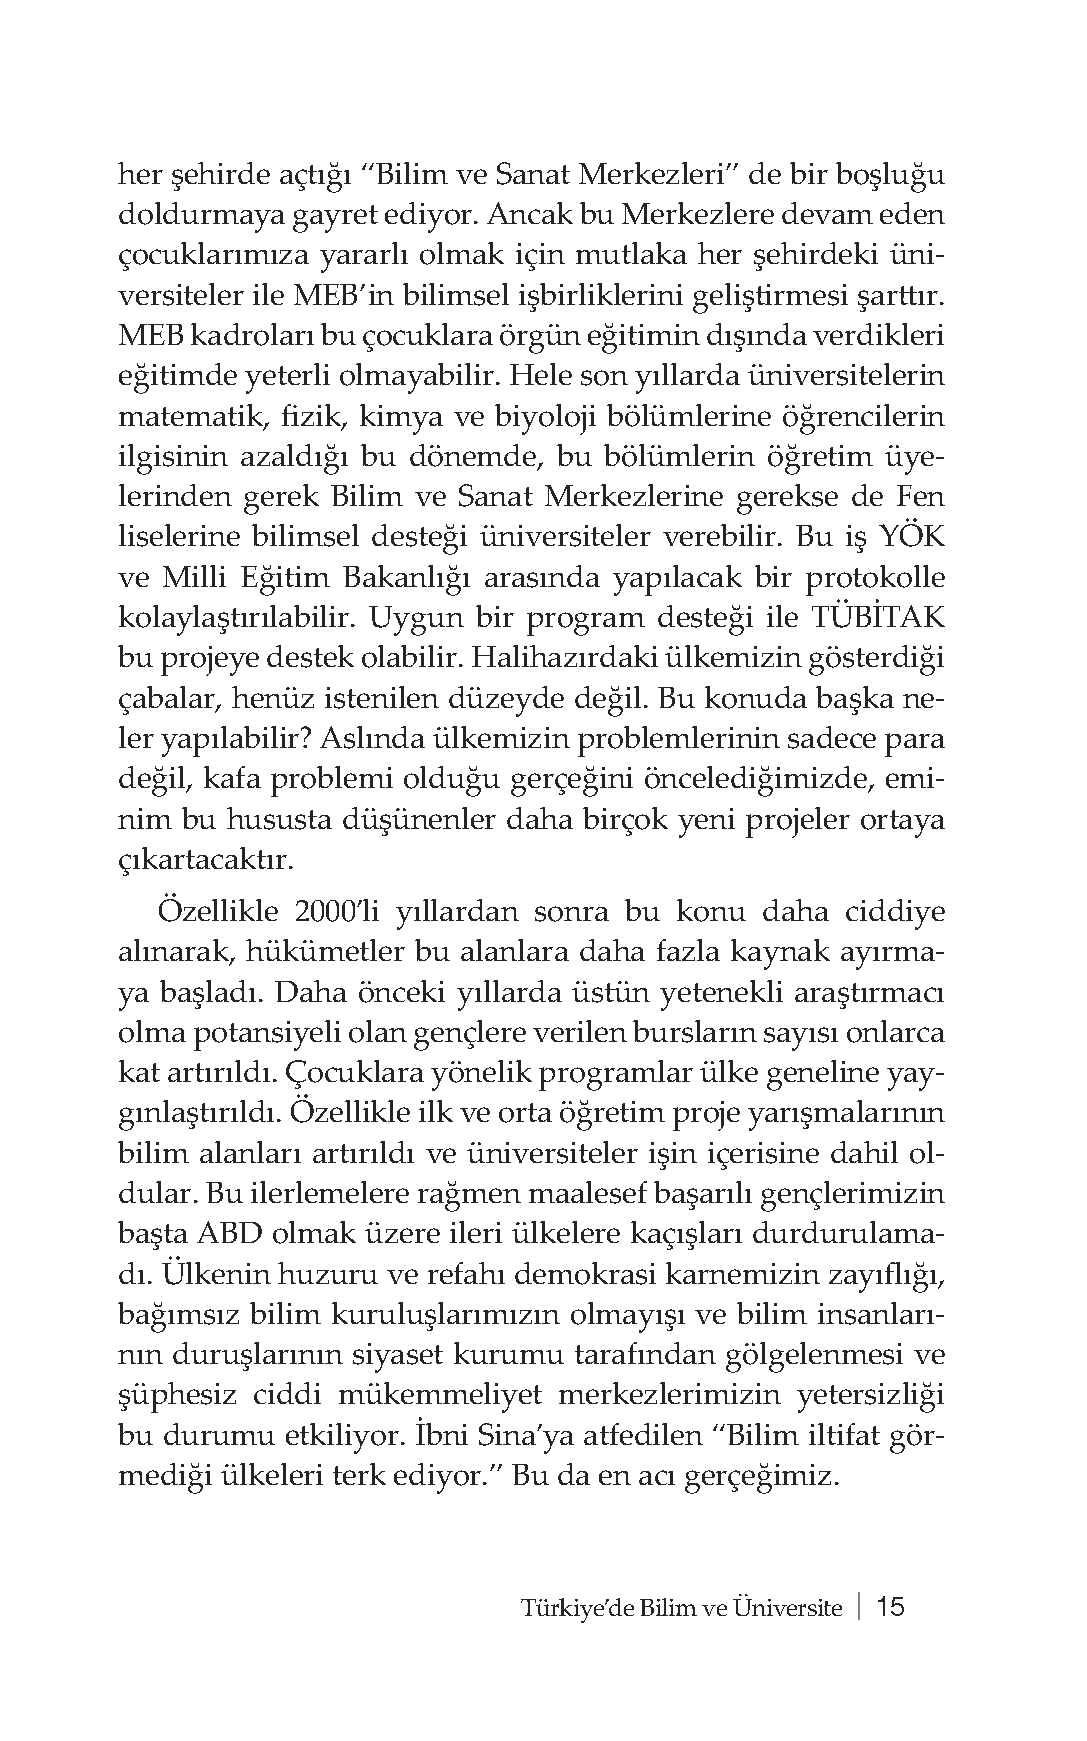 Türkiyede Bilim ve Üniversite - Prof. Dr. Cemil Çelik